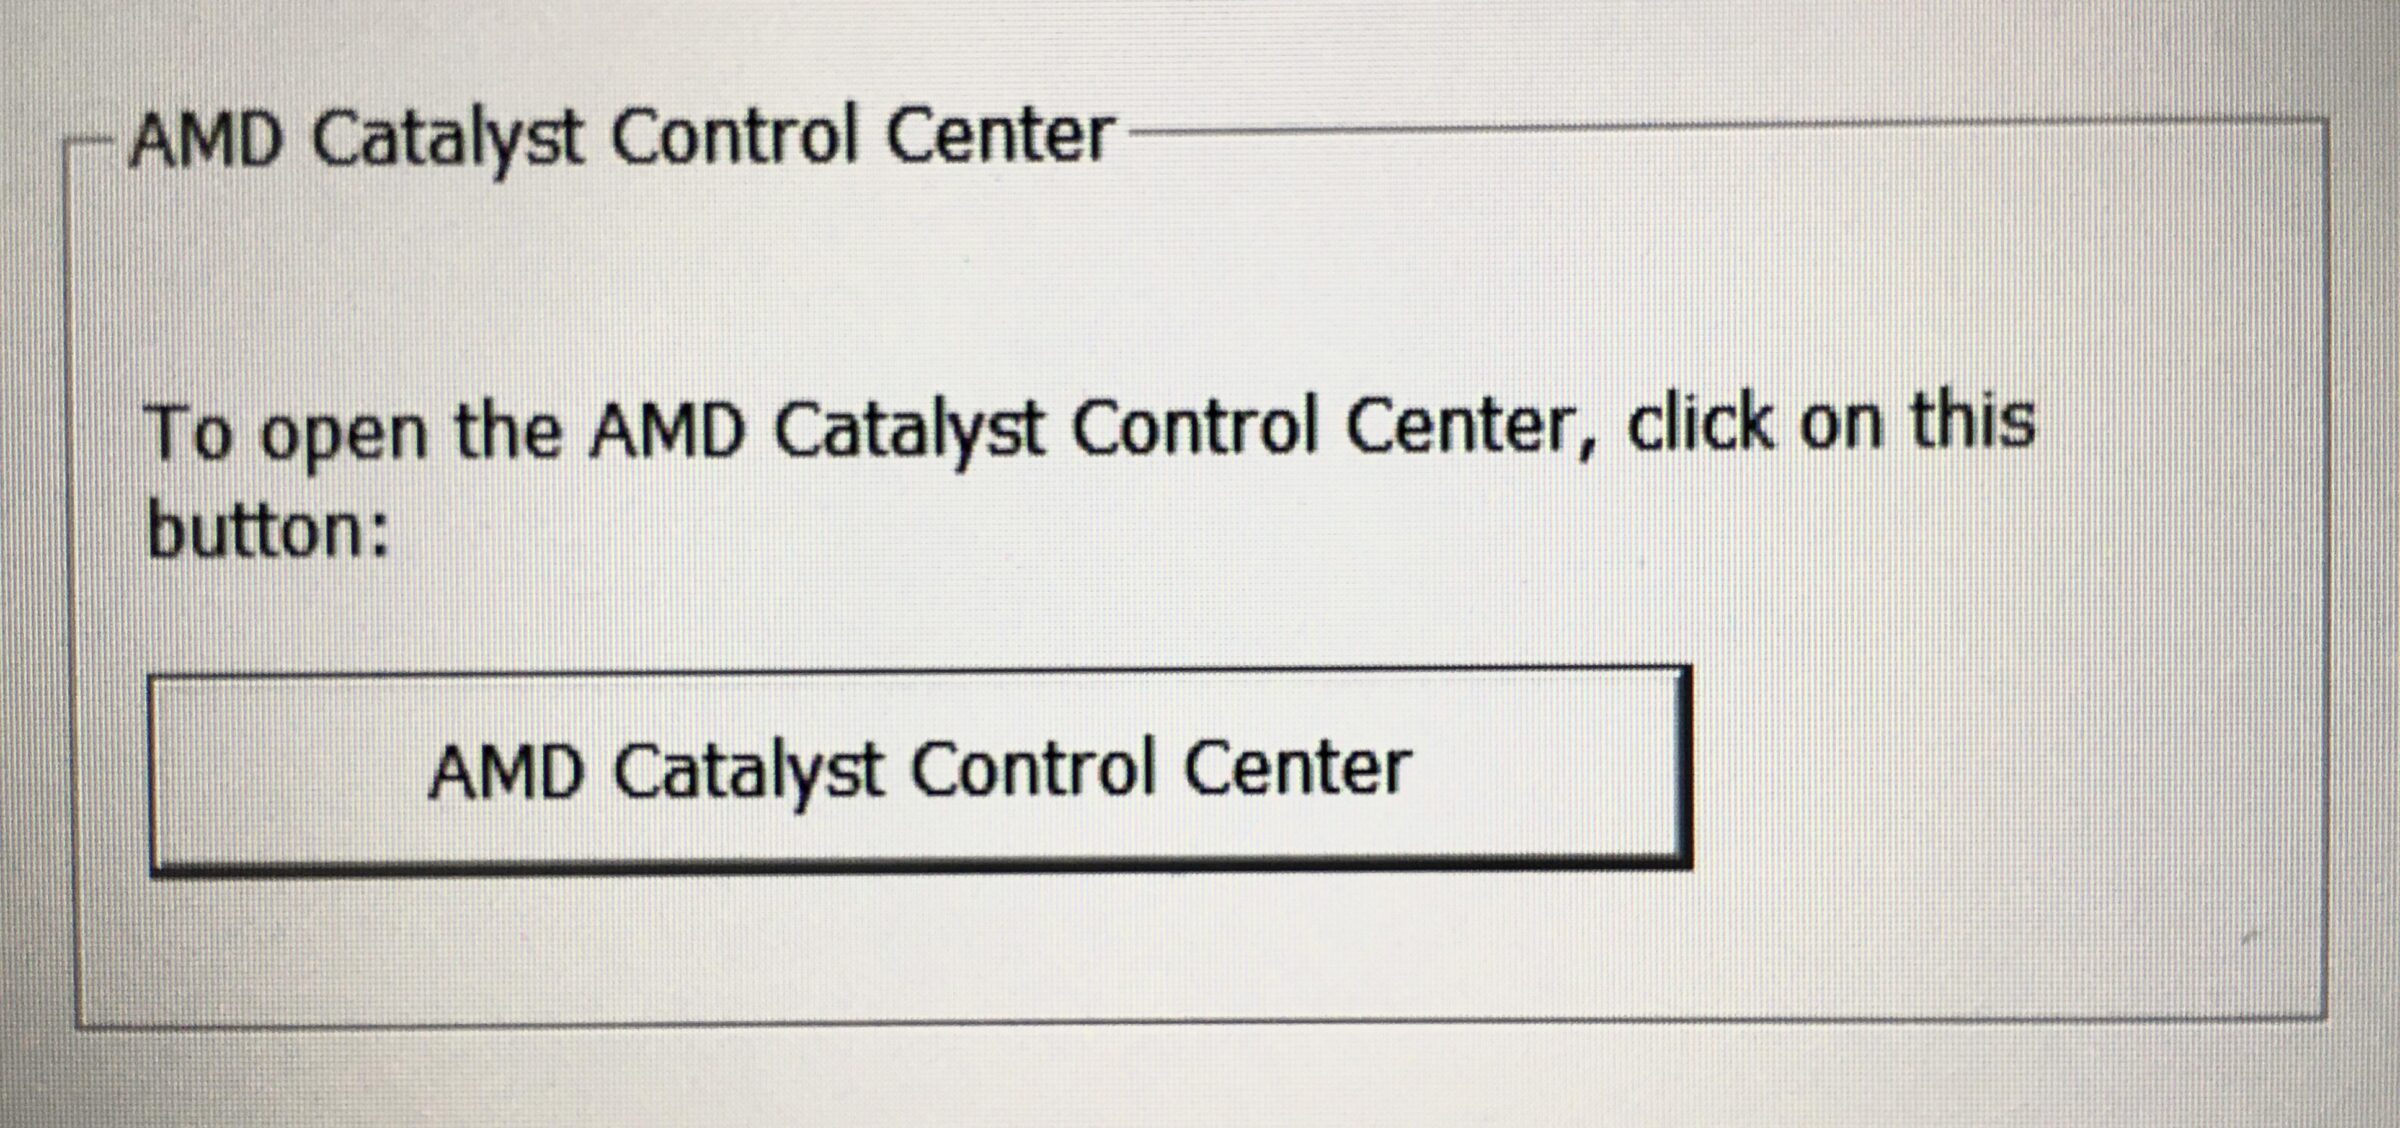 Cringe, MD Catalyst Control Center cringe memes Cringe, MD Catalyst Control Center text: AMD Catalyst Control Center to open the AMD Catalyst Control Center, click on this button: AMD Catalyst Control Center 